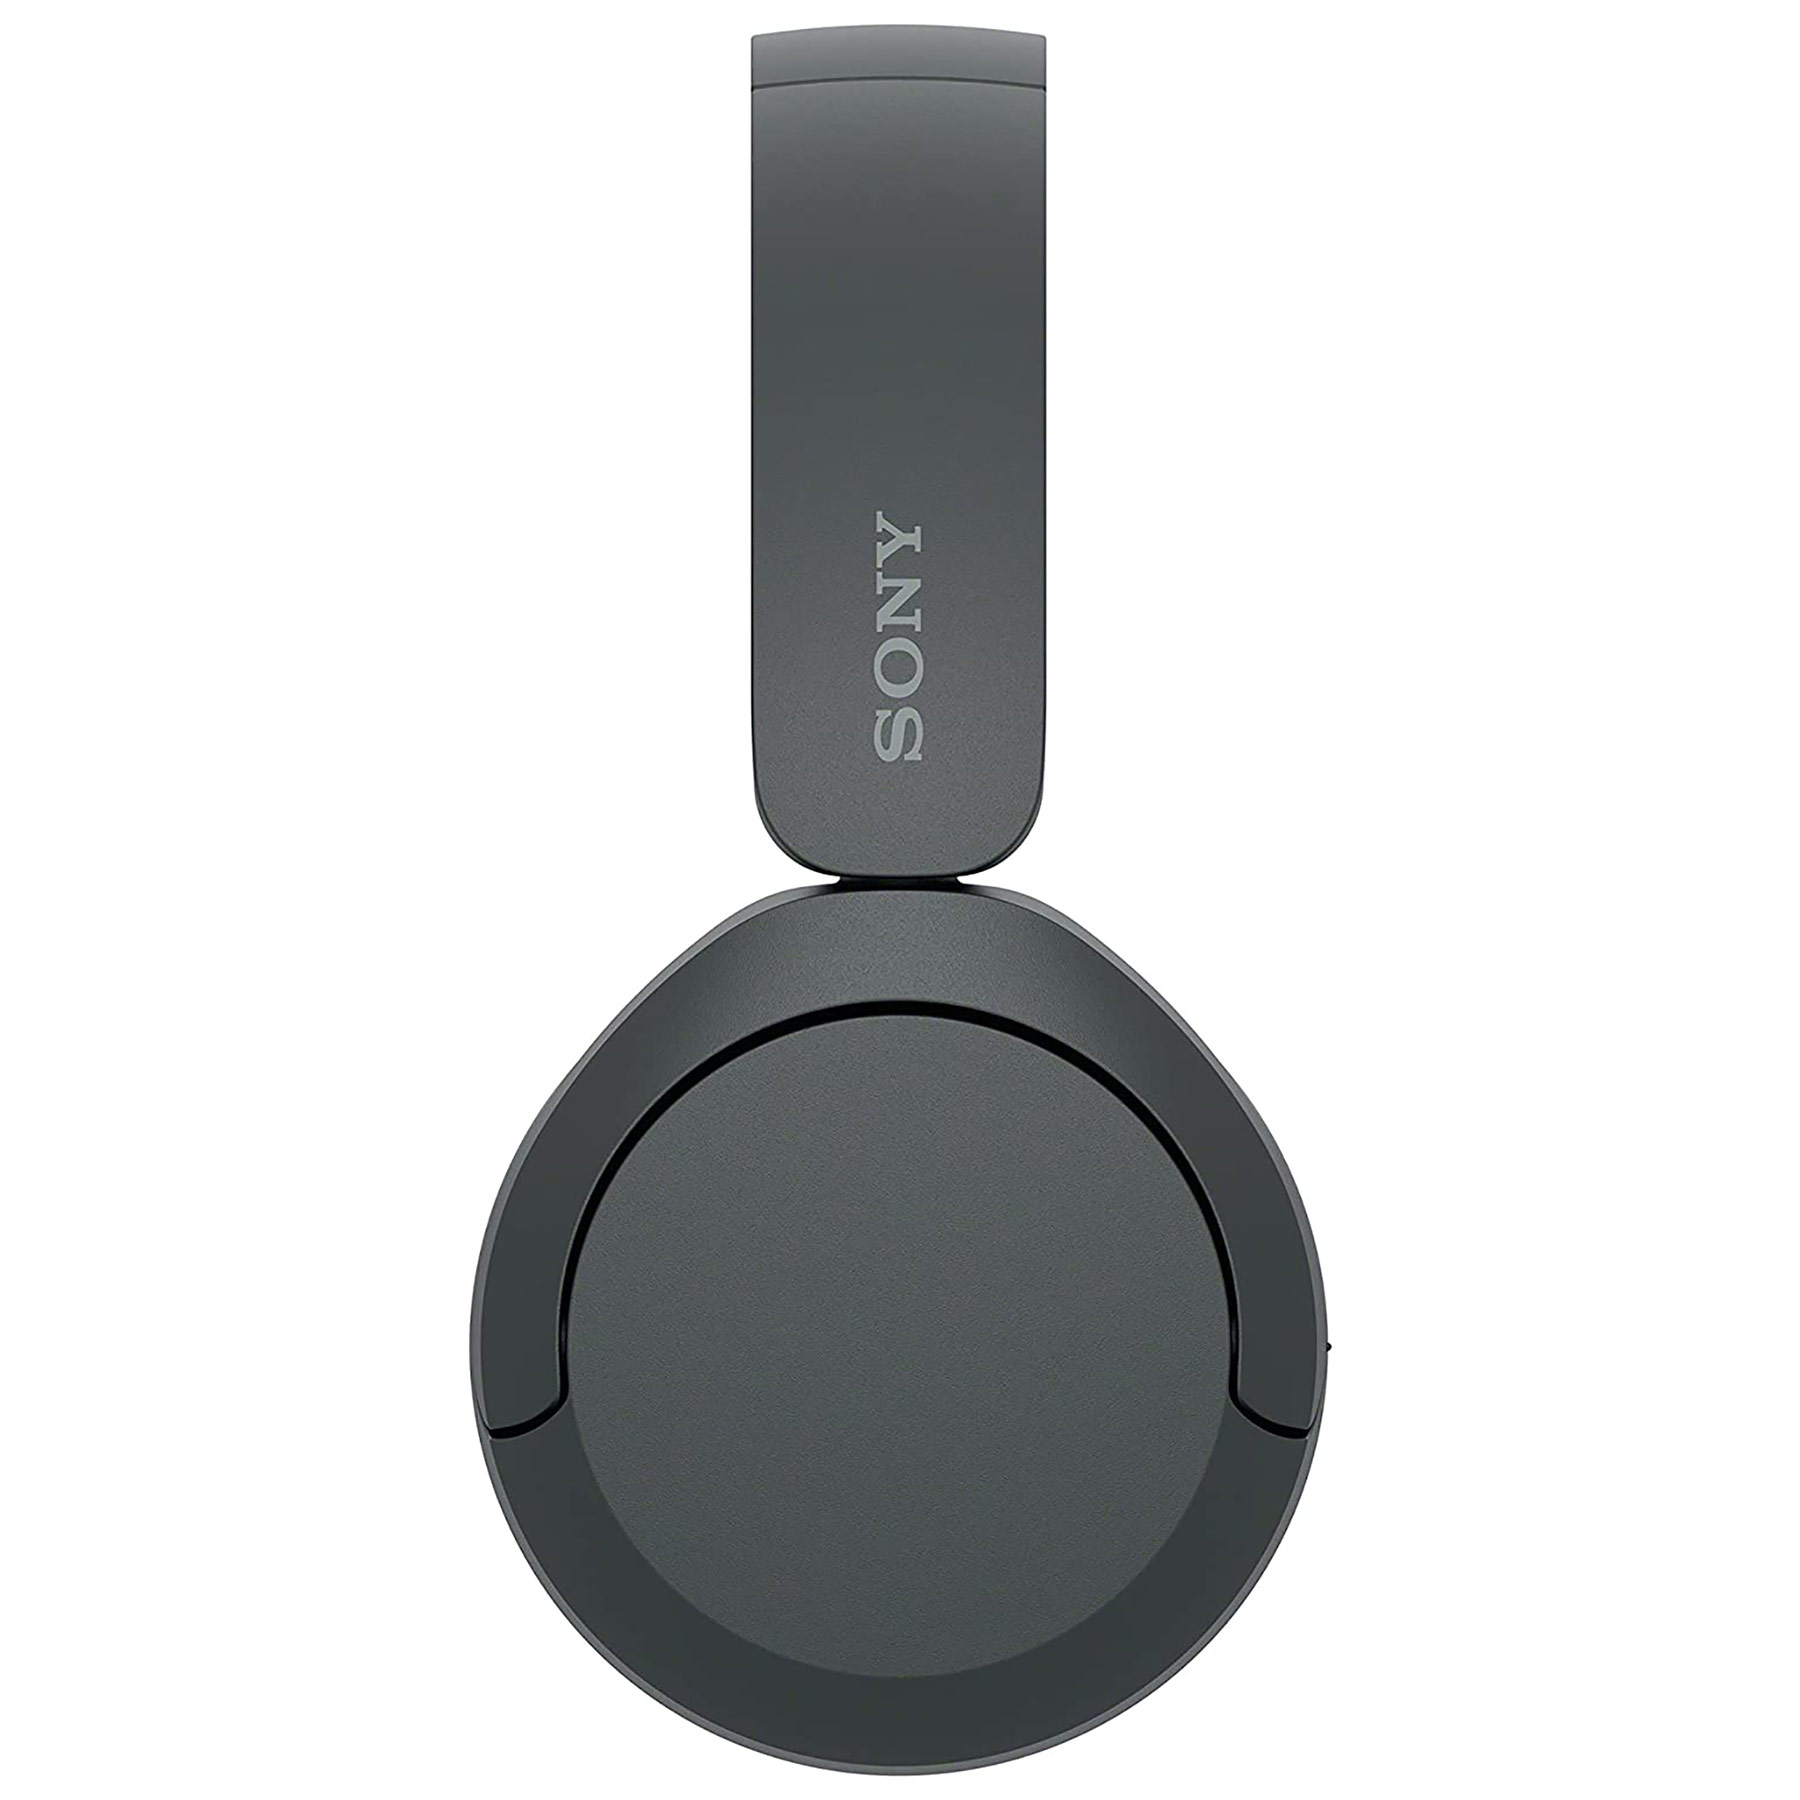 Sony WH CH520B On Ear Wireless Bluetooth Headphones in Black